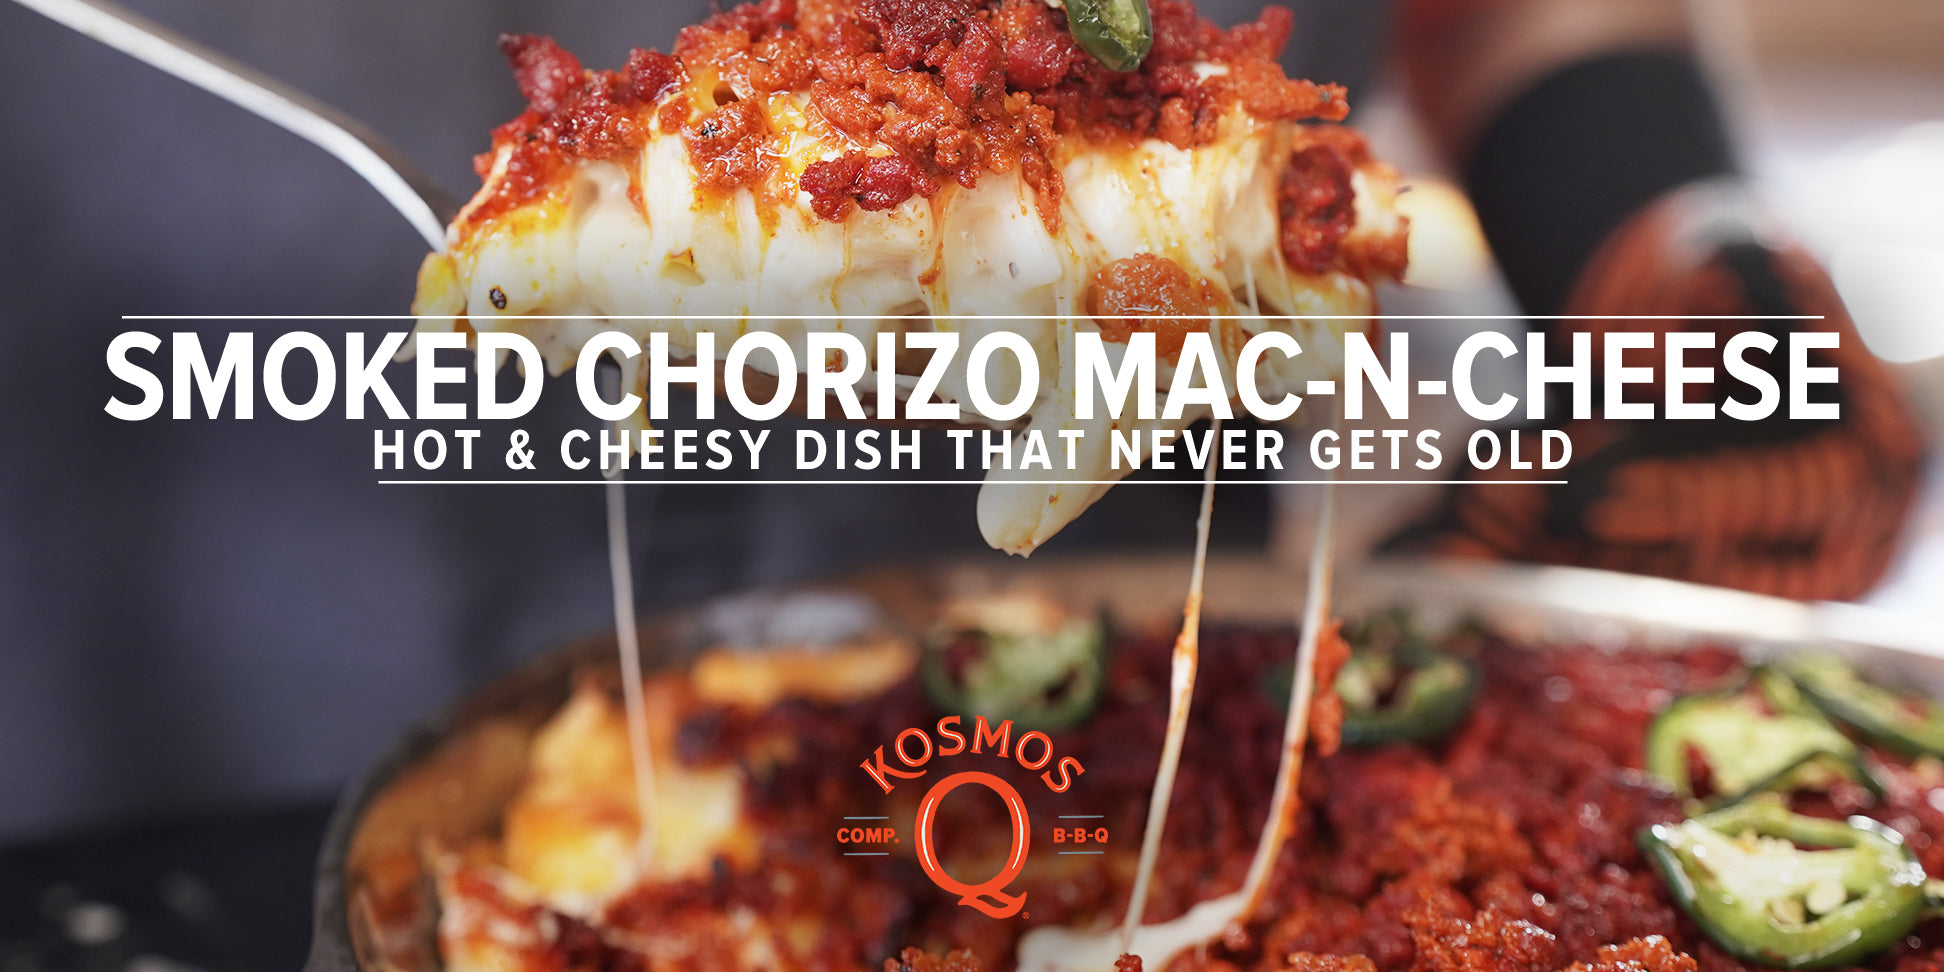 Smoked Chorizo Mac-N-Cheese